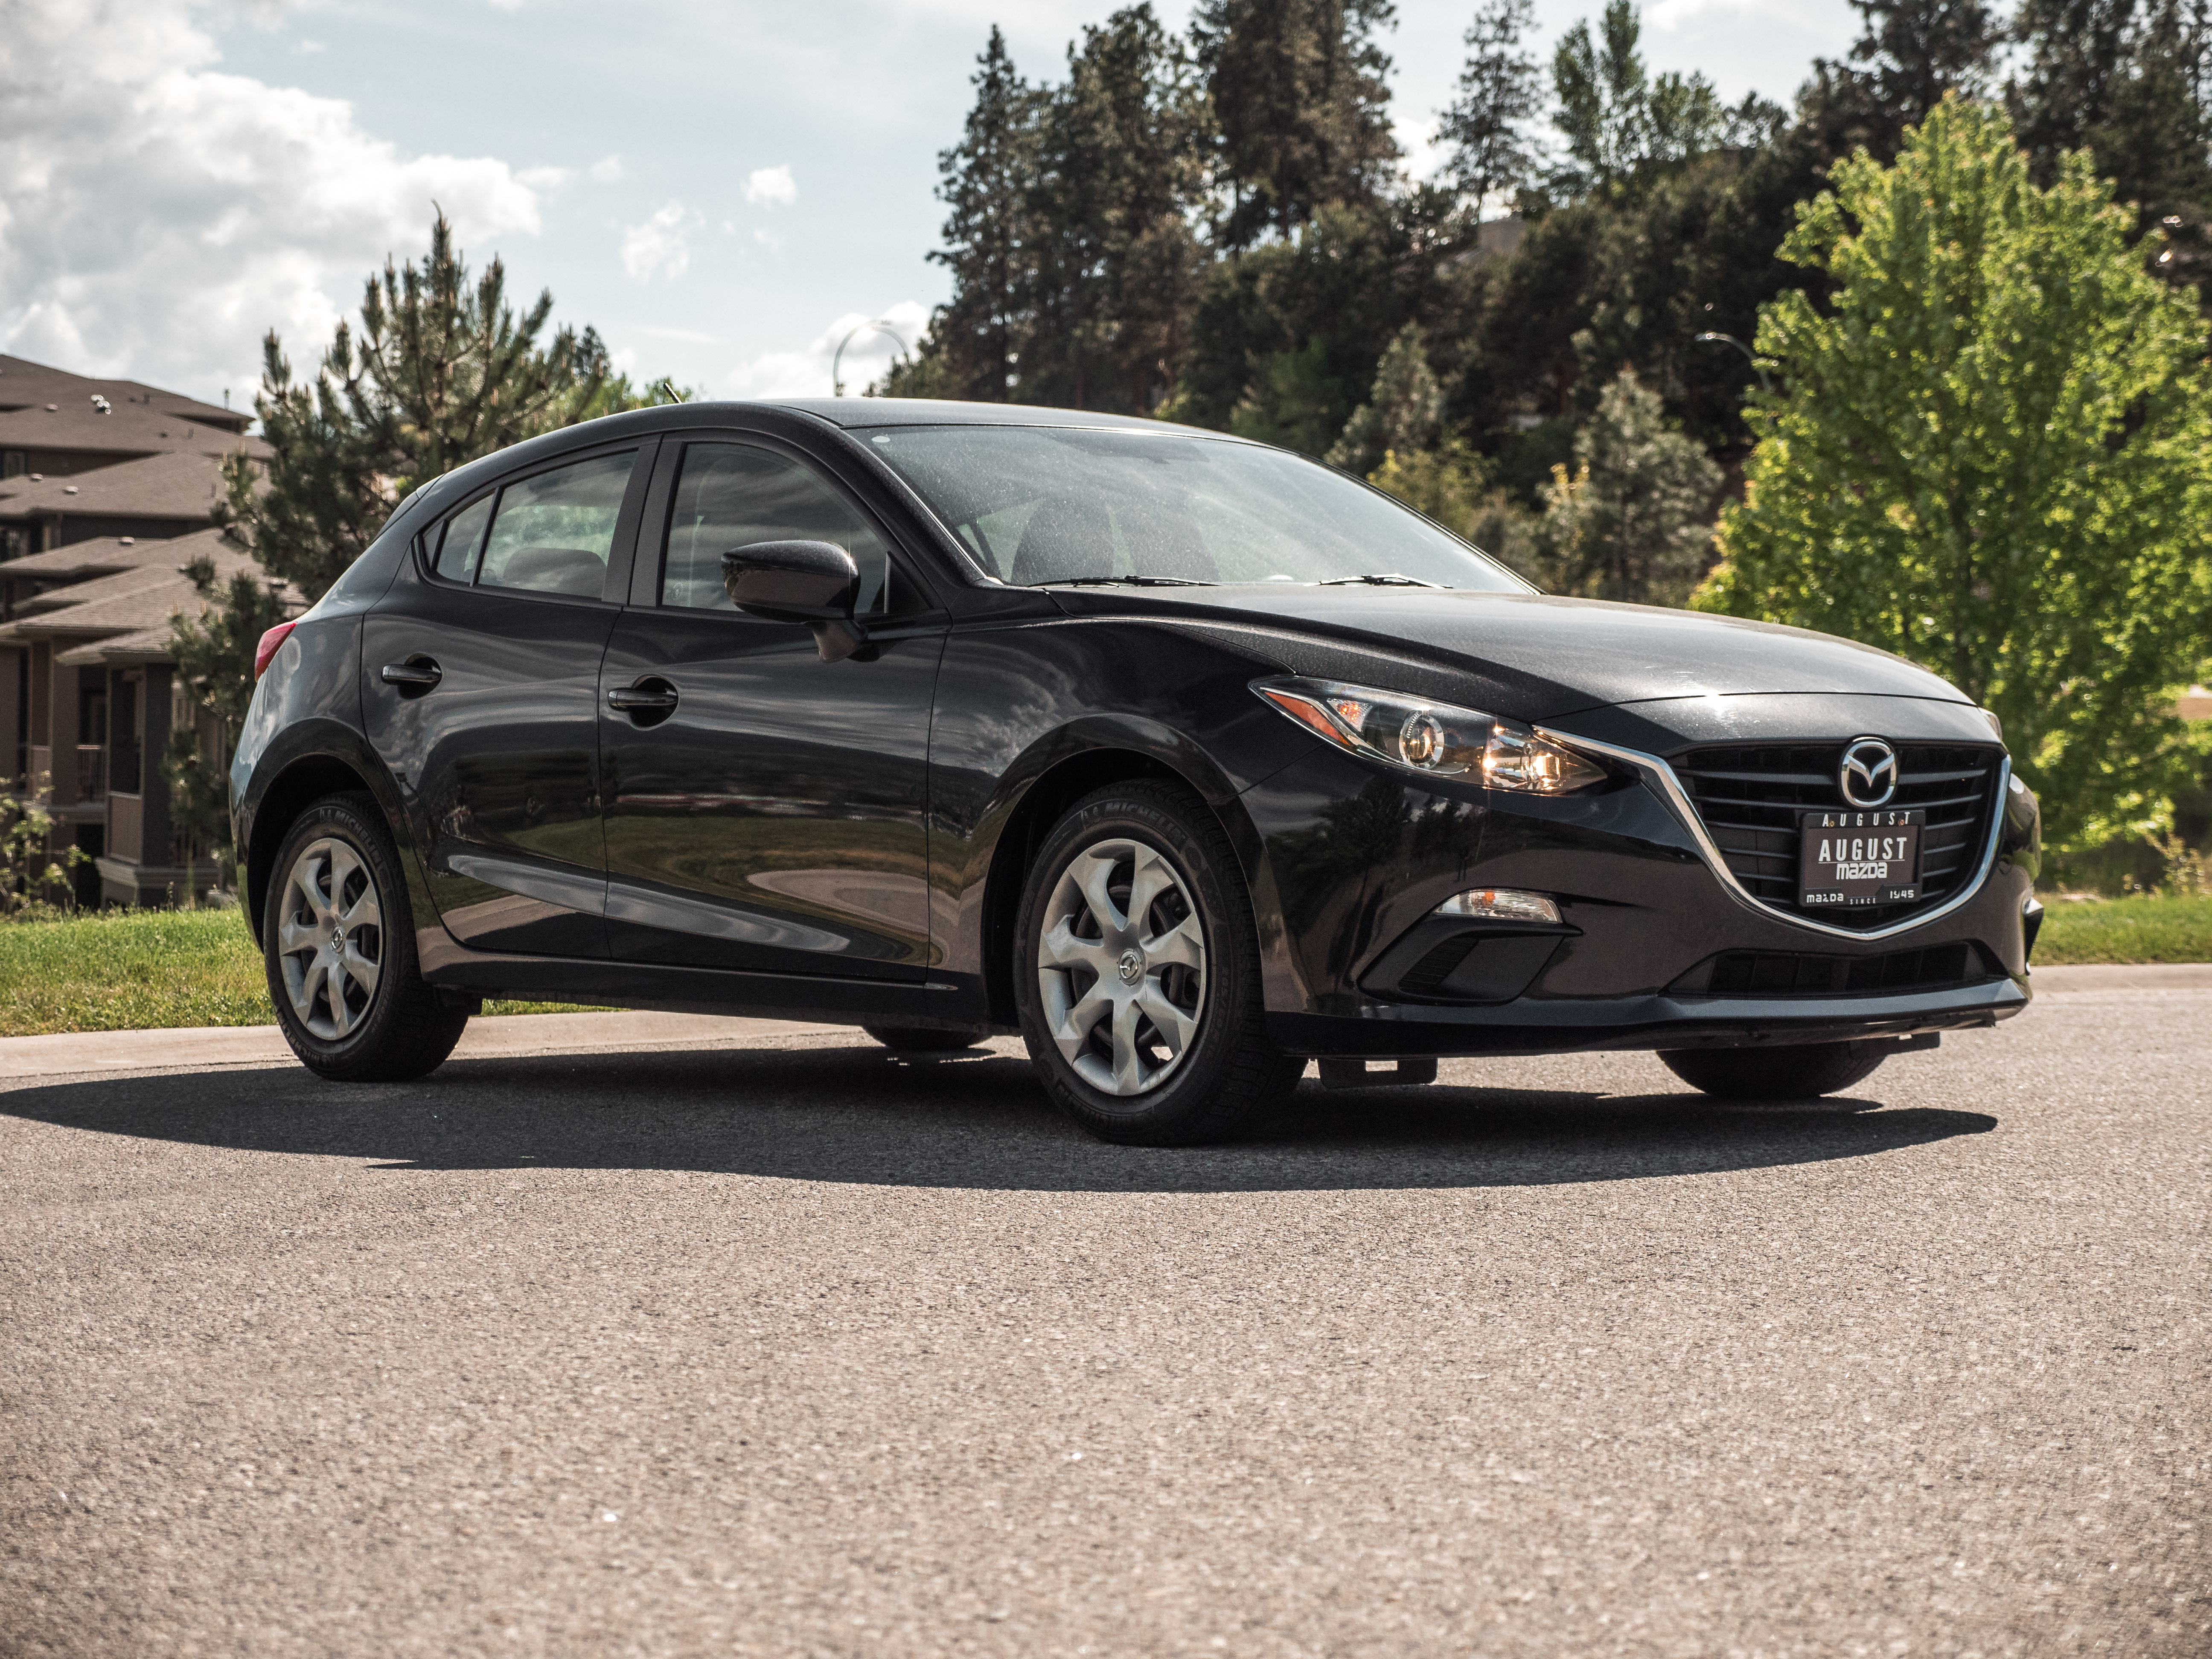 Pre-Owned 2015 Mazda 3 Sport GX 4 Door Hatchback in Kelowna #U-3650 ...